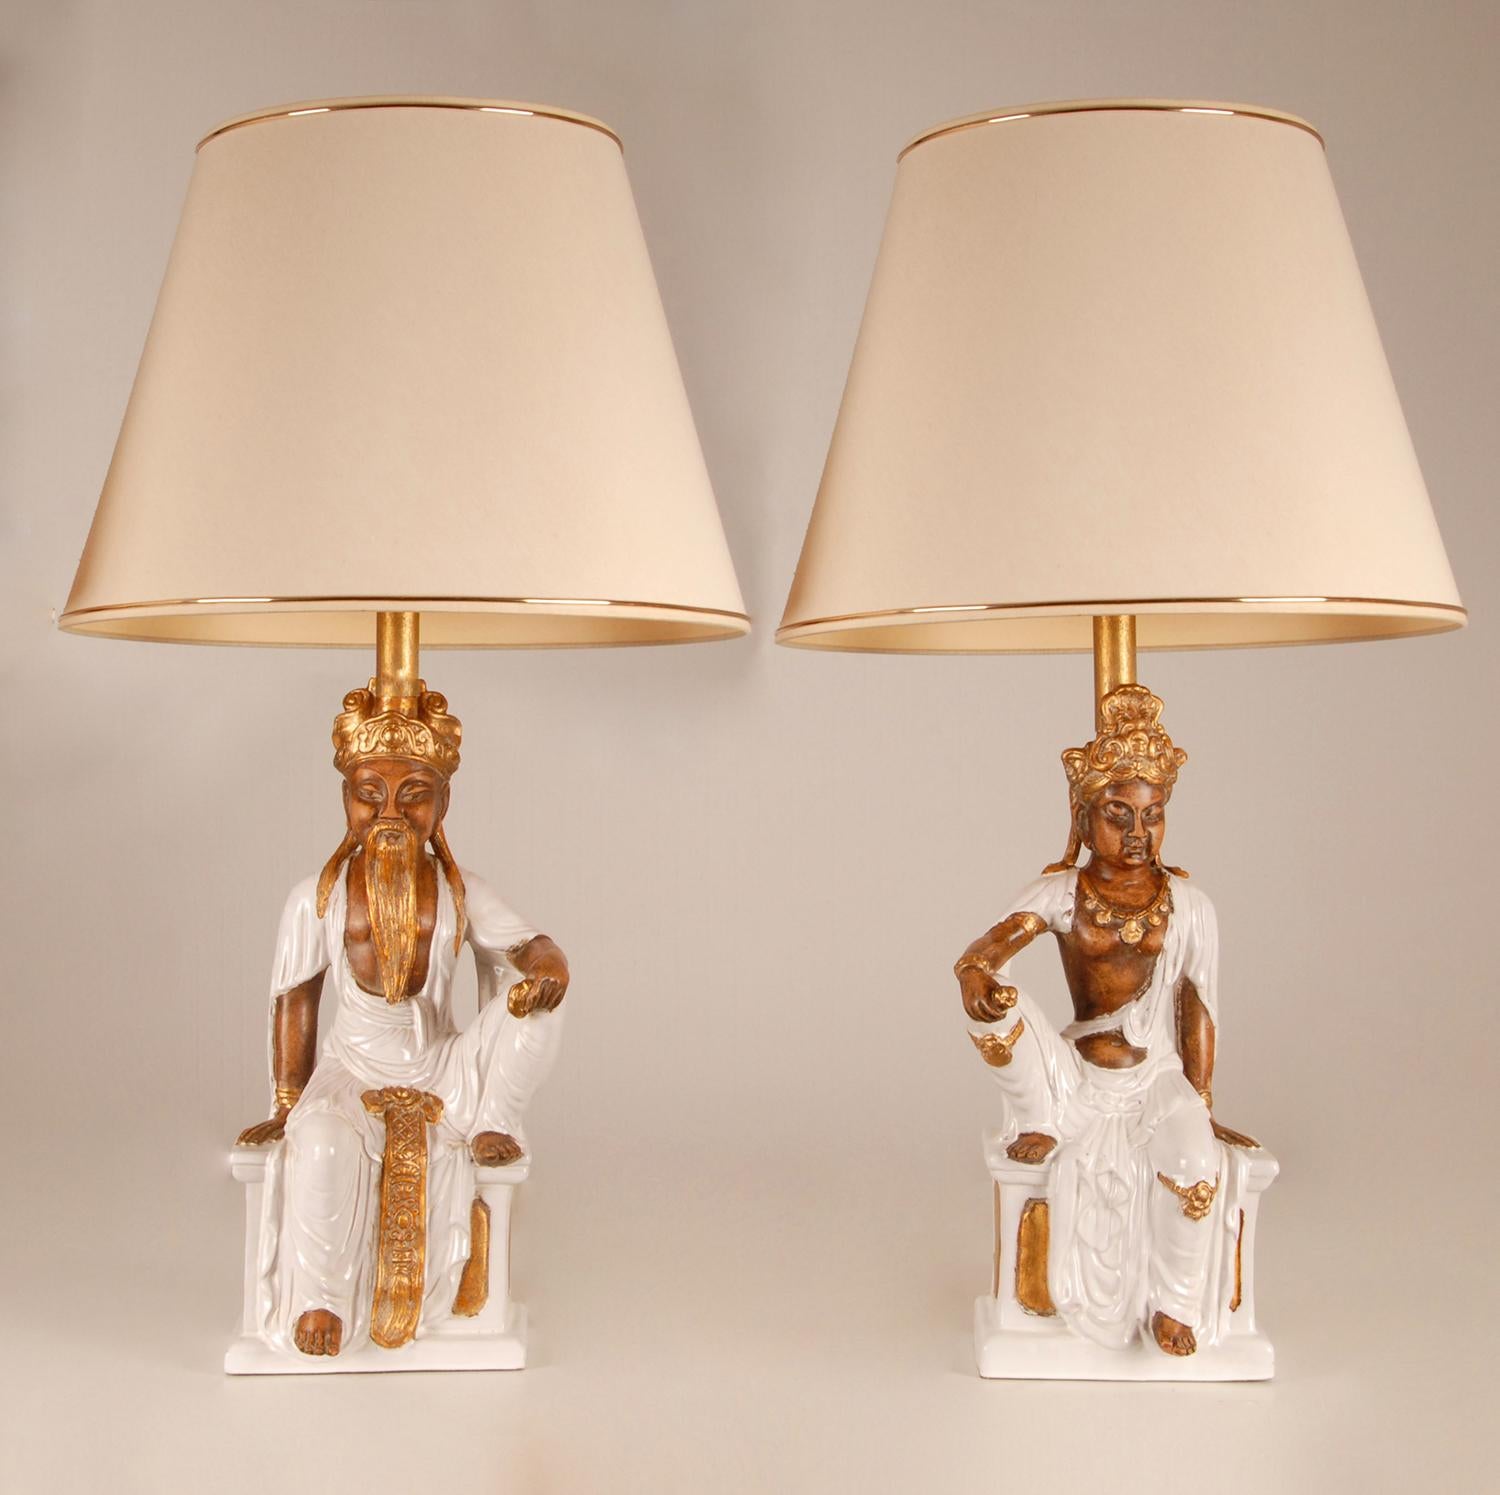 Merk : lampes de table figures de bouddha chinoises
Lampe de table vintage Bouddha chinois en céramique
Matériau : porcelaine, céramique, poterie
Design/One : Ugo Zaccagnini
Producteur : Zaccagnini
Origine : Italie, 1960
Style : Vintage, Mid